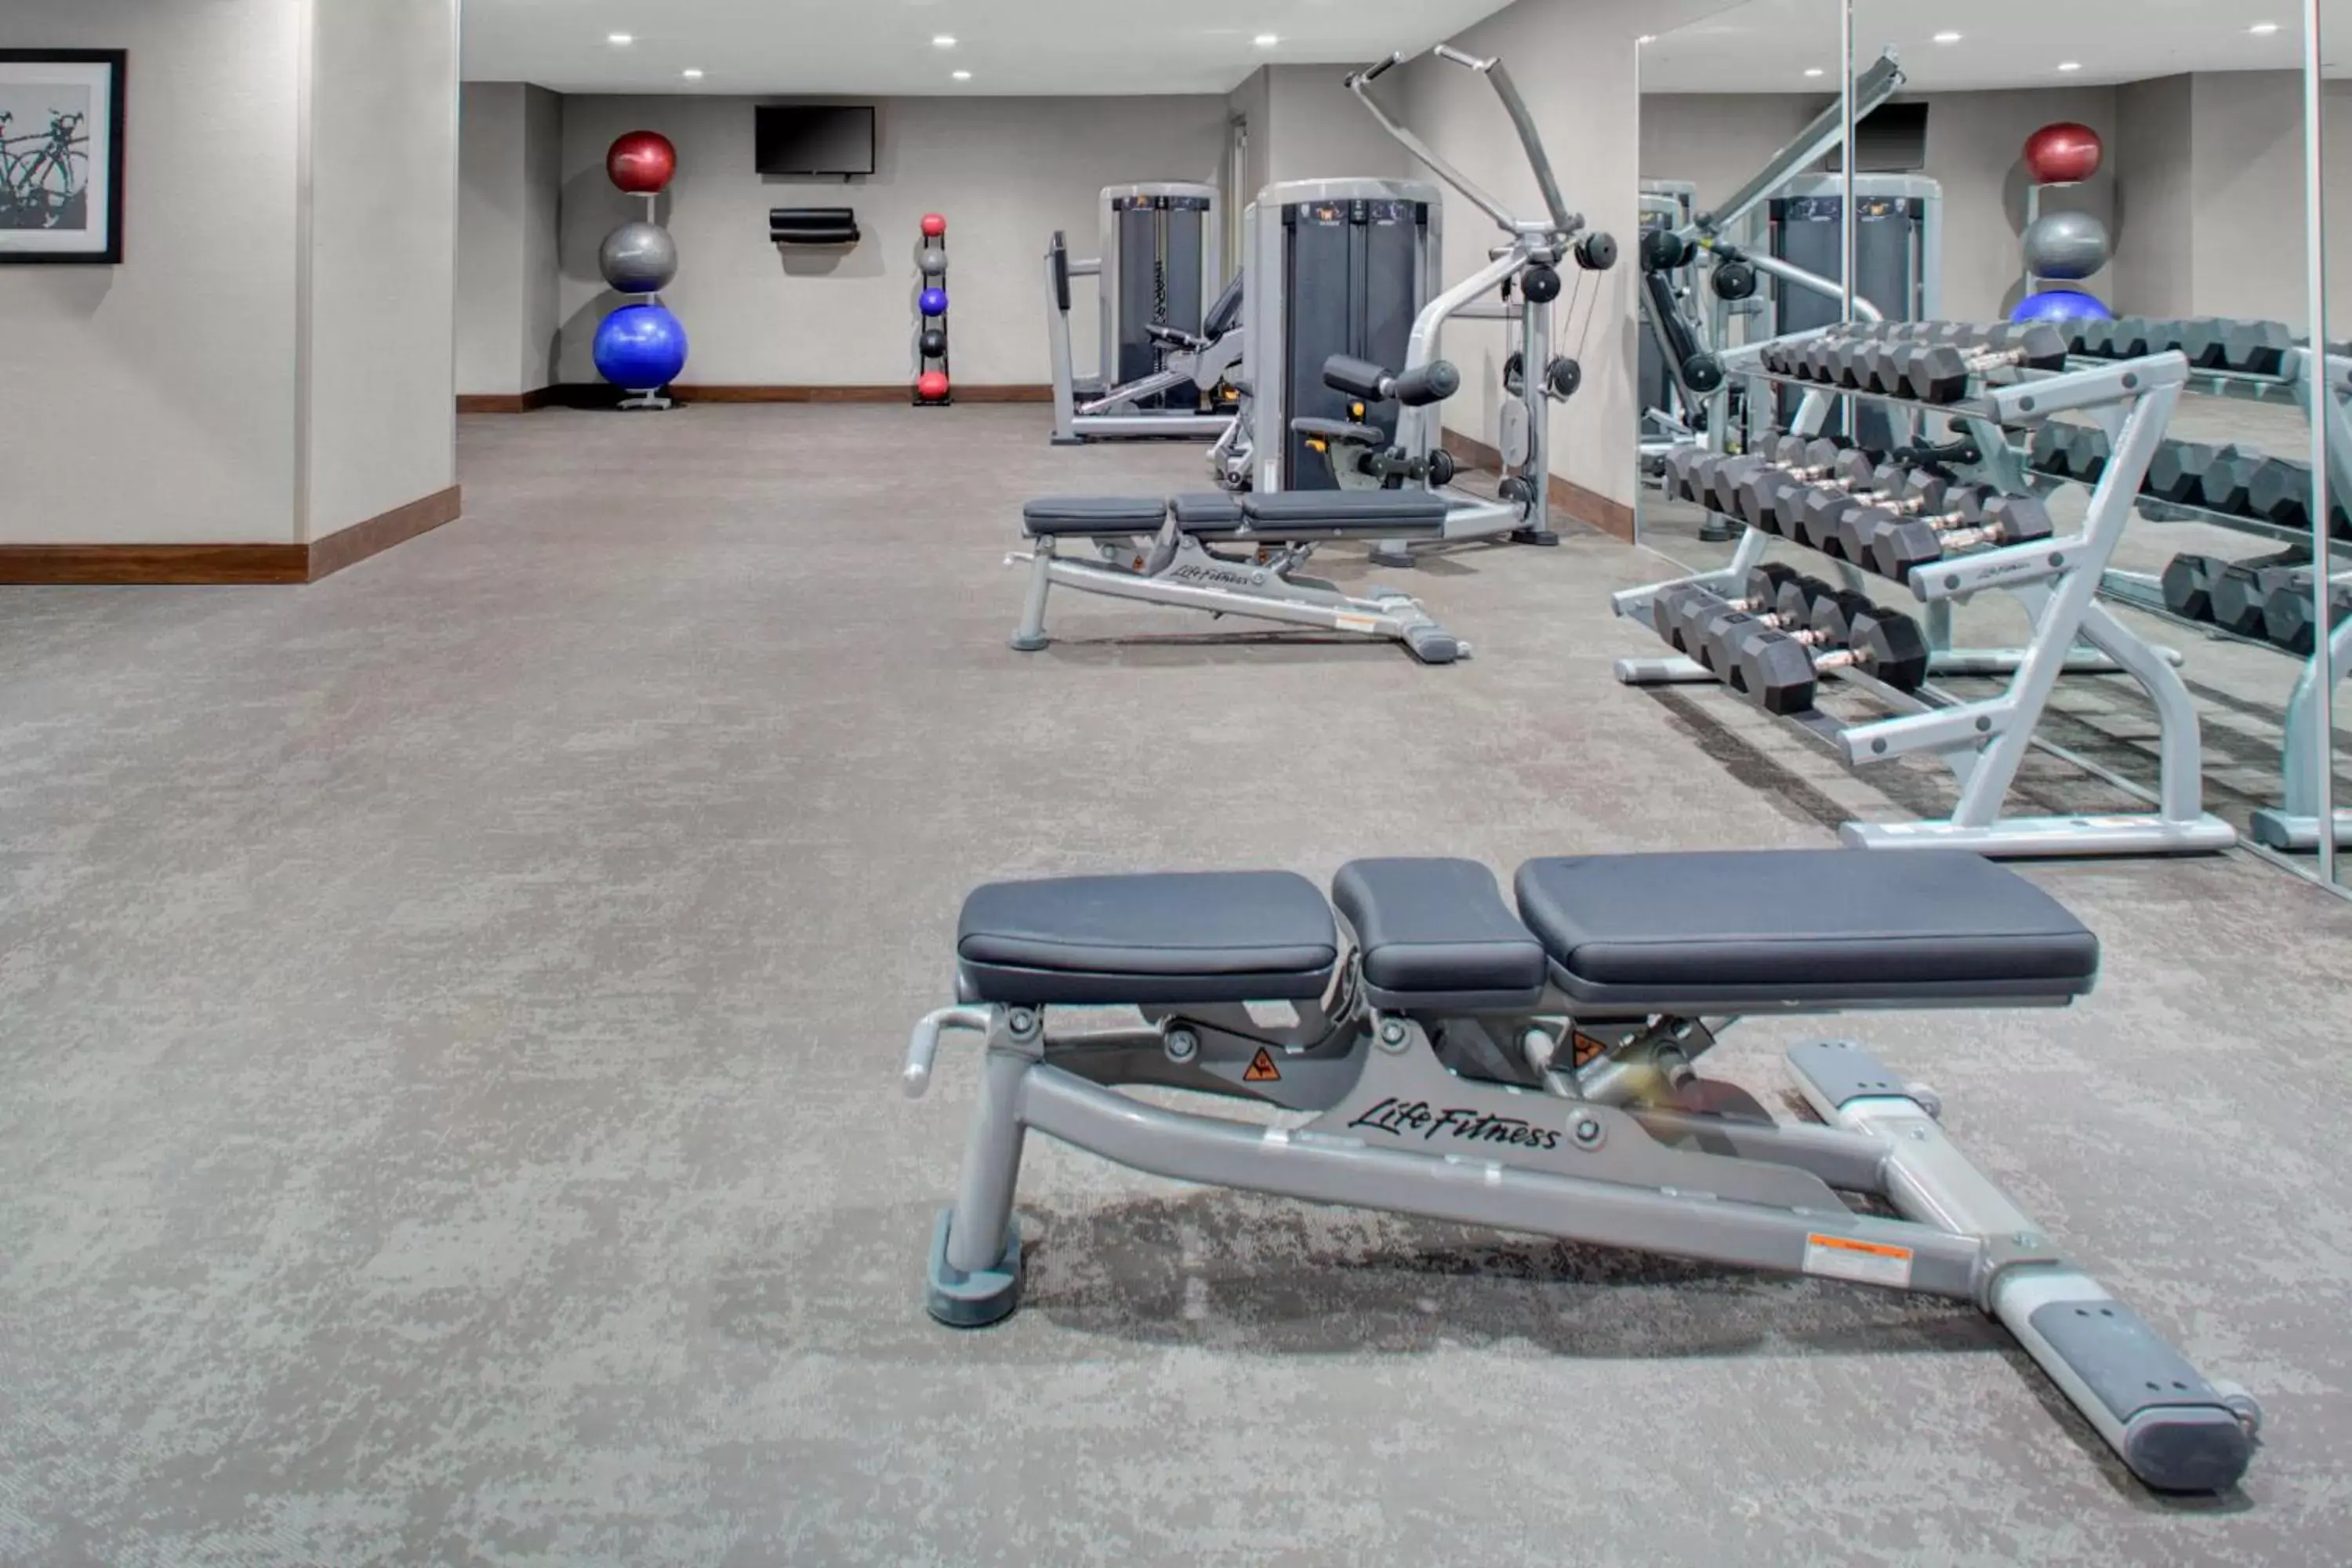 Fitness centre/facilities, Fitness Center/Facilities in Fairfield Inn & Suites by Marriott Boulder Broomfield/Interlocken